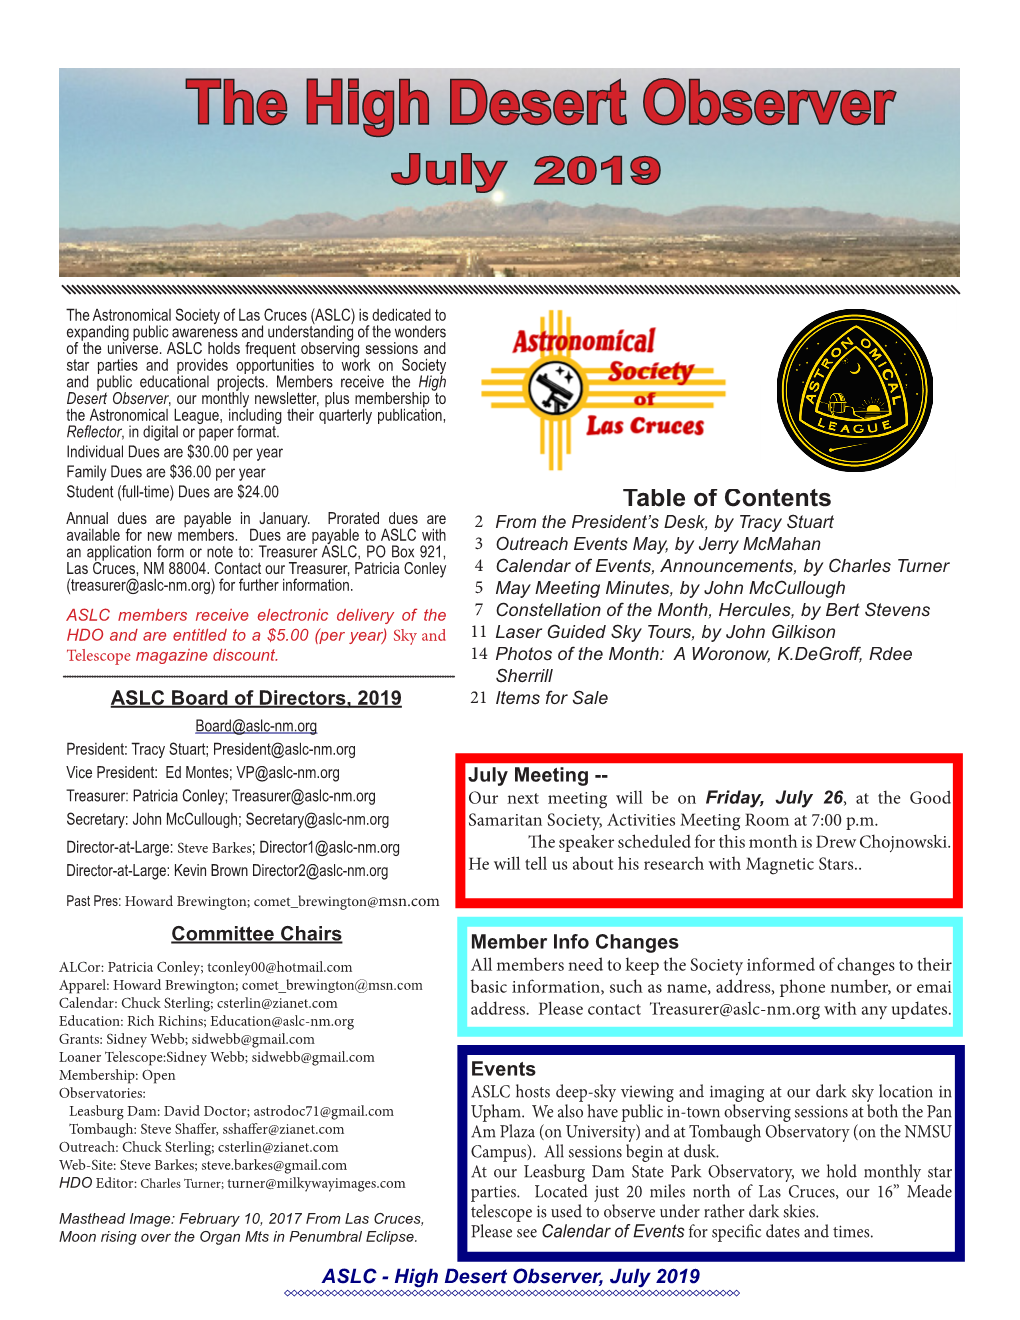 The High Desert Observer July 2019